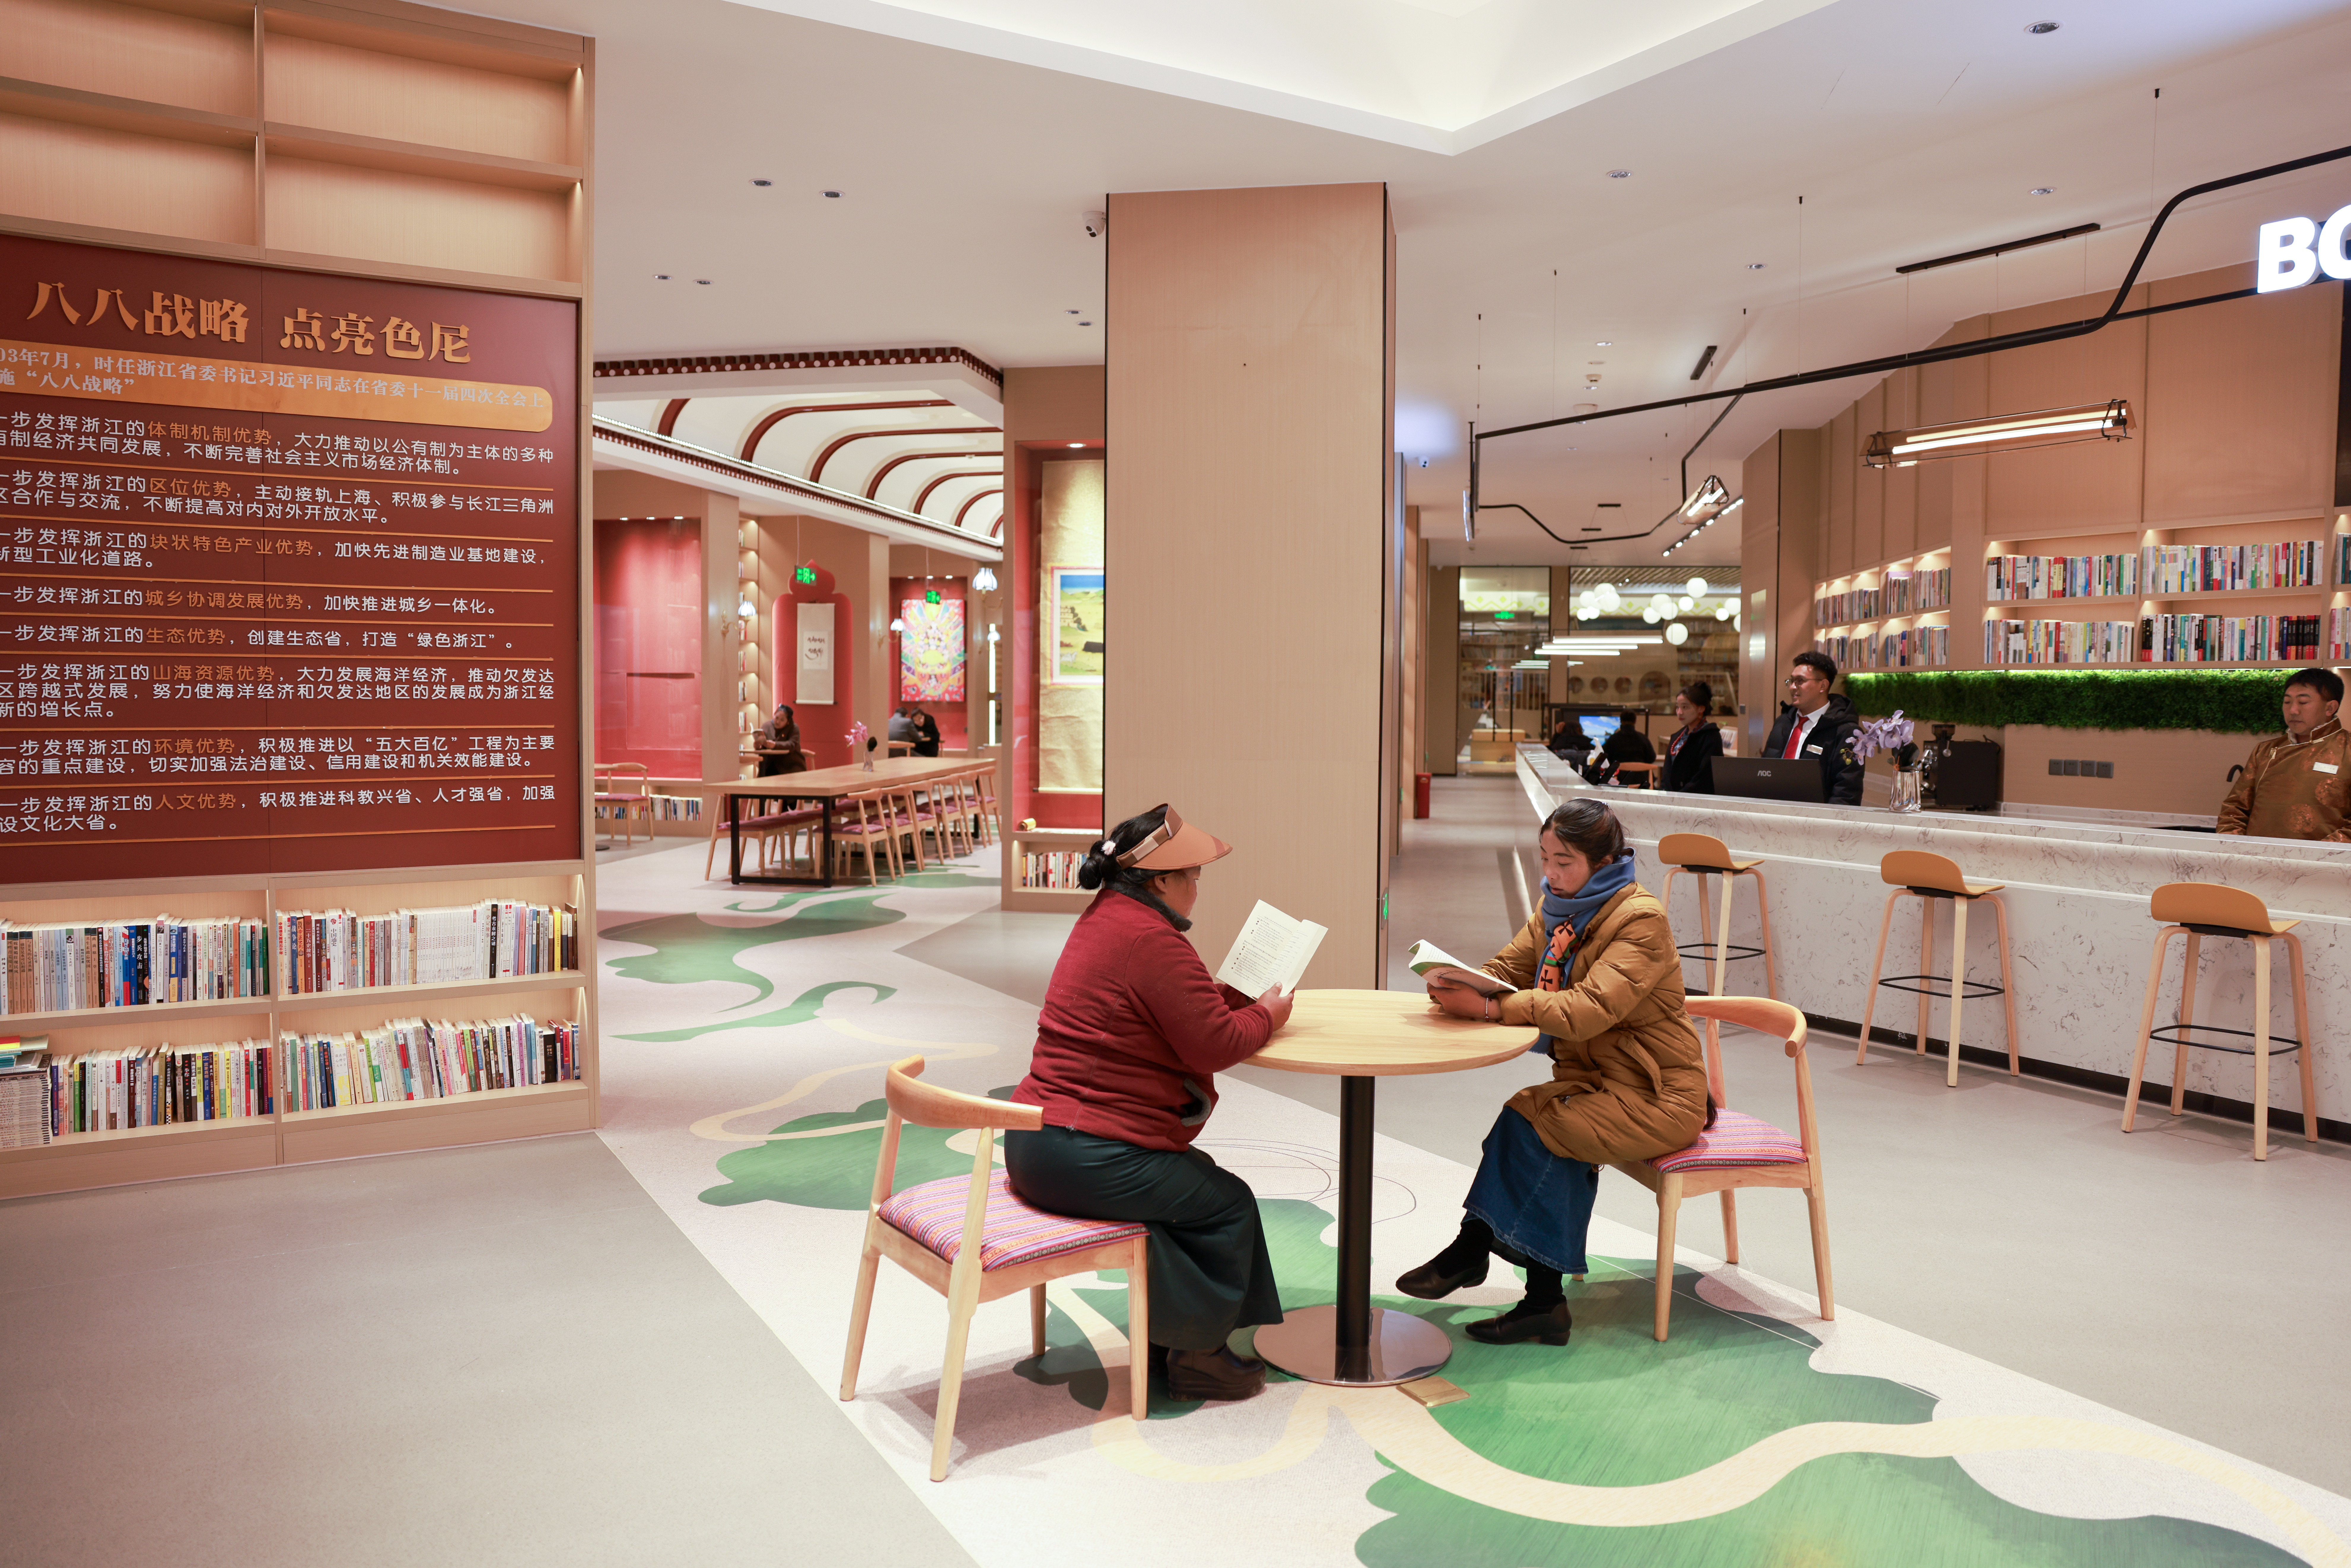 “温暖嘉·色尼城市书房”融合了那曲本土文化及江南水乡元素，为当地群众提供高品质的公共阅读空间。